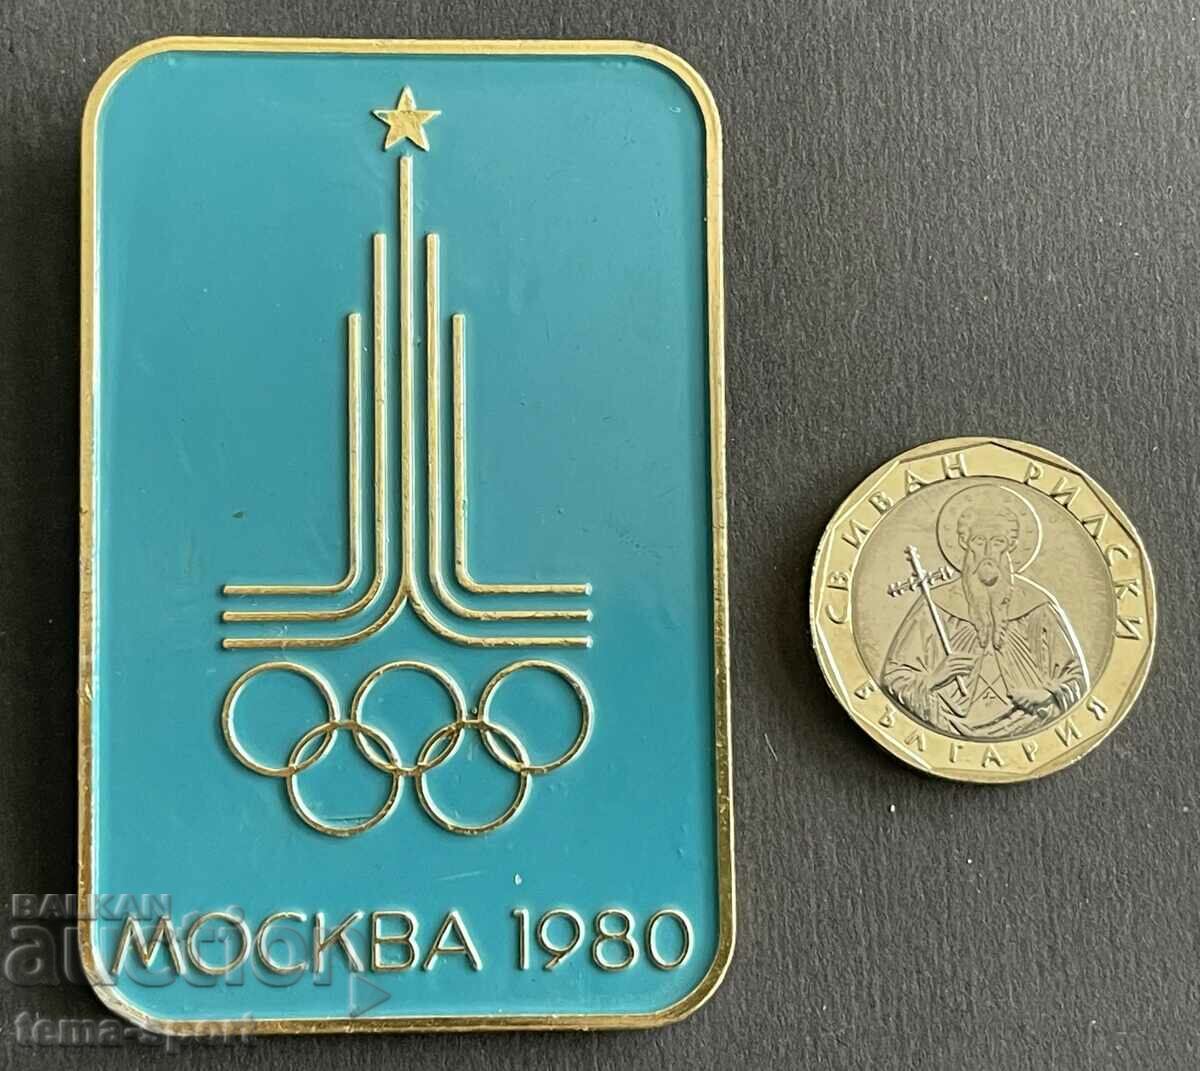 515 URSS mare insignă olimpică Jocurile Olimpice de la Moscova 1980.